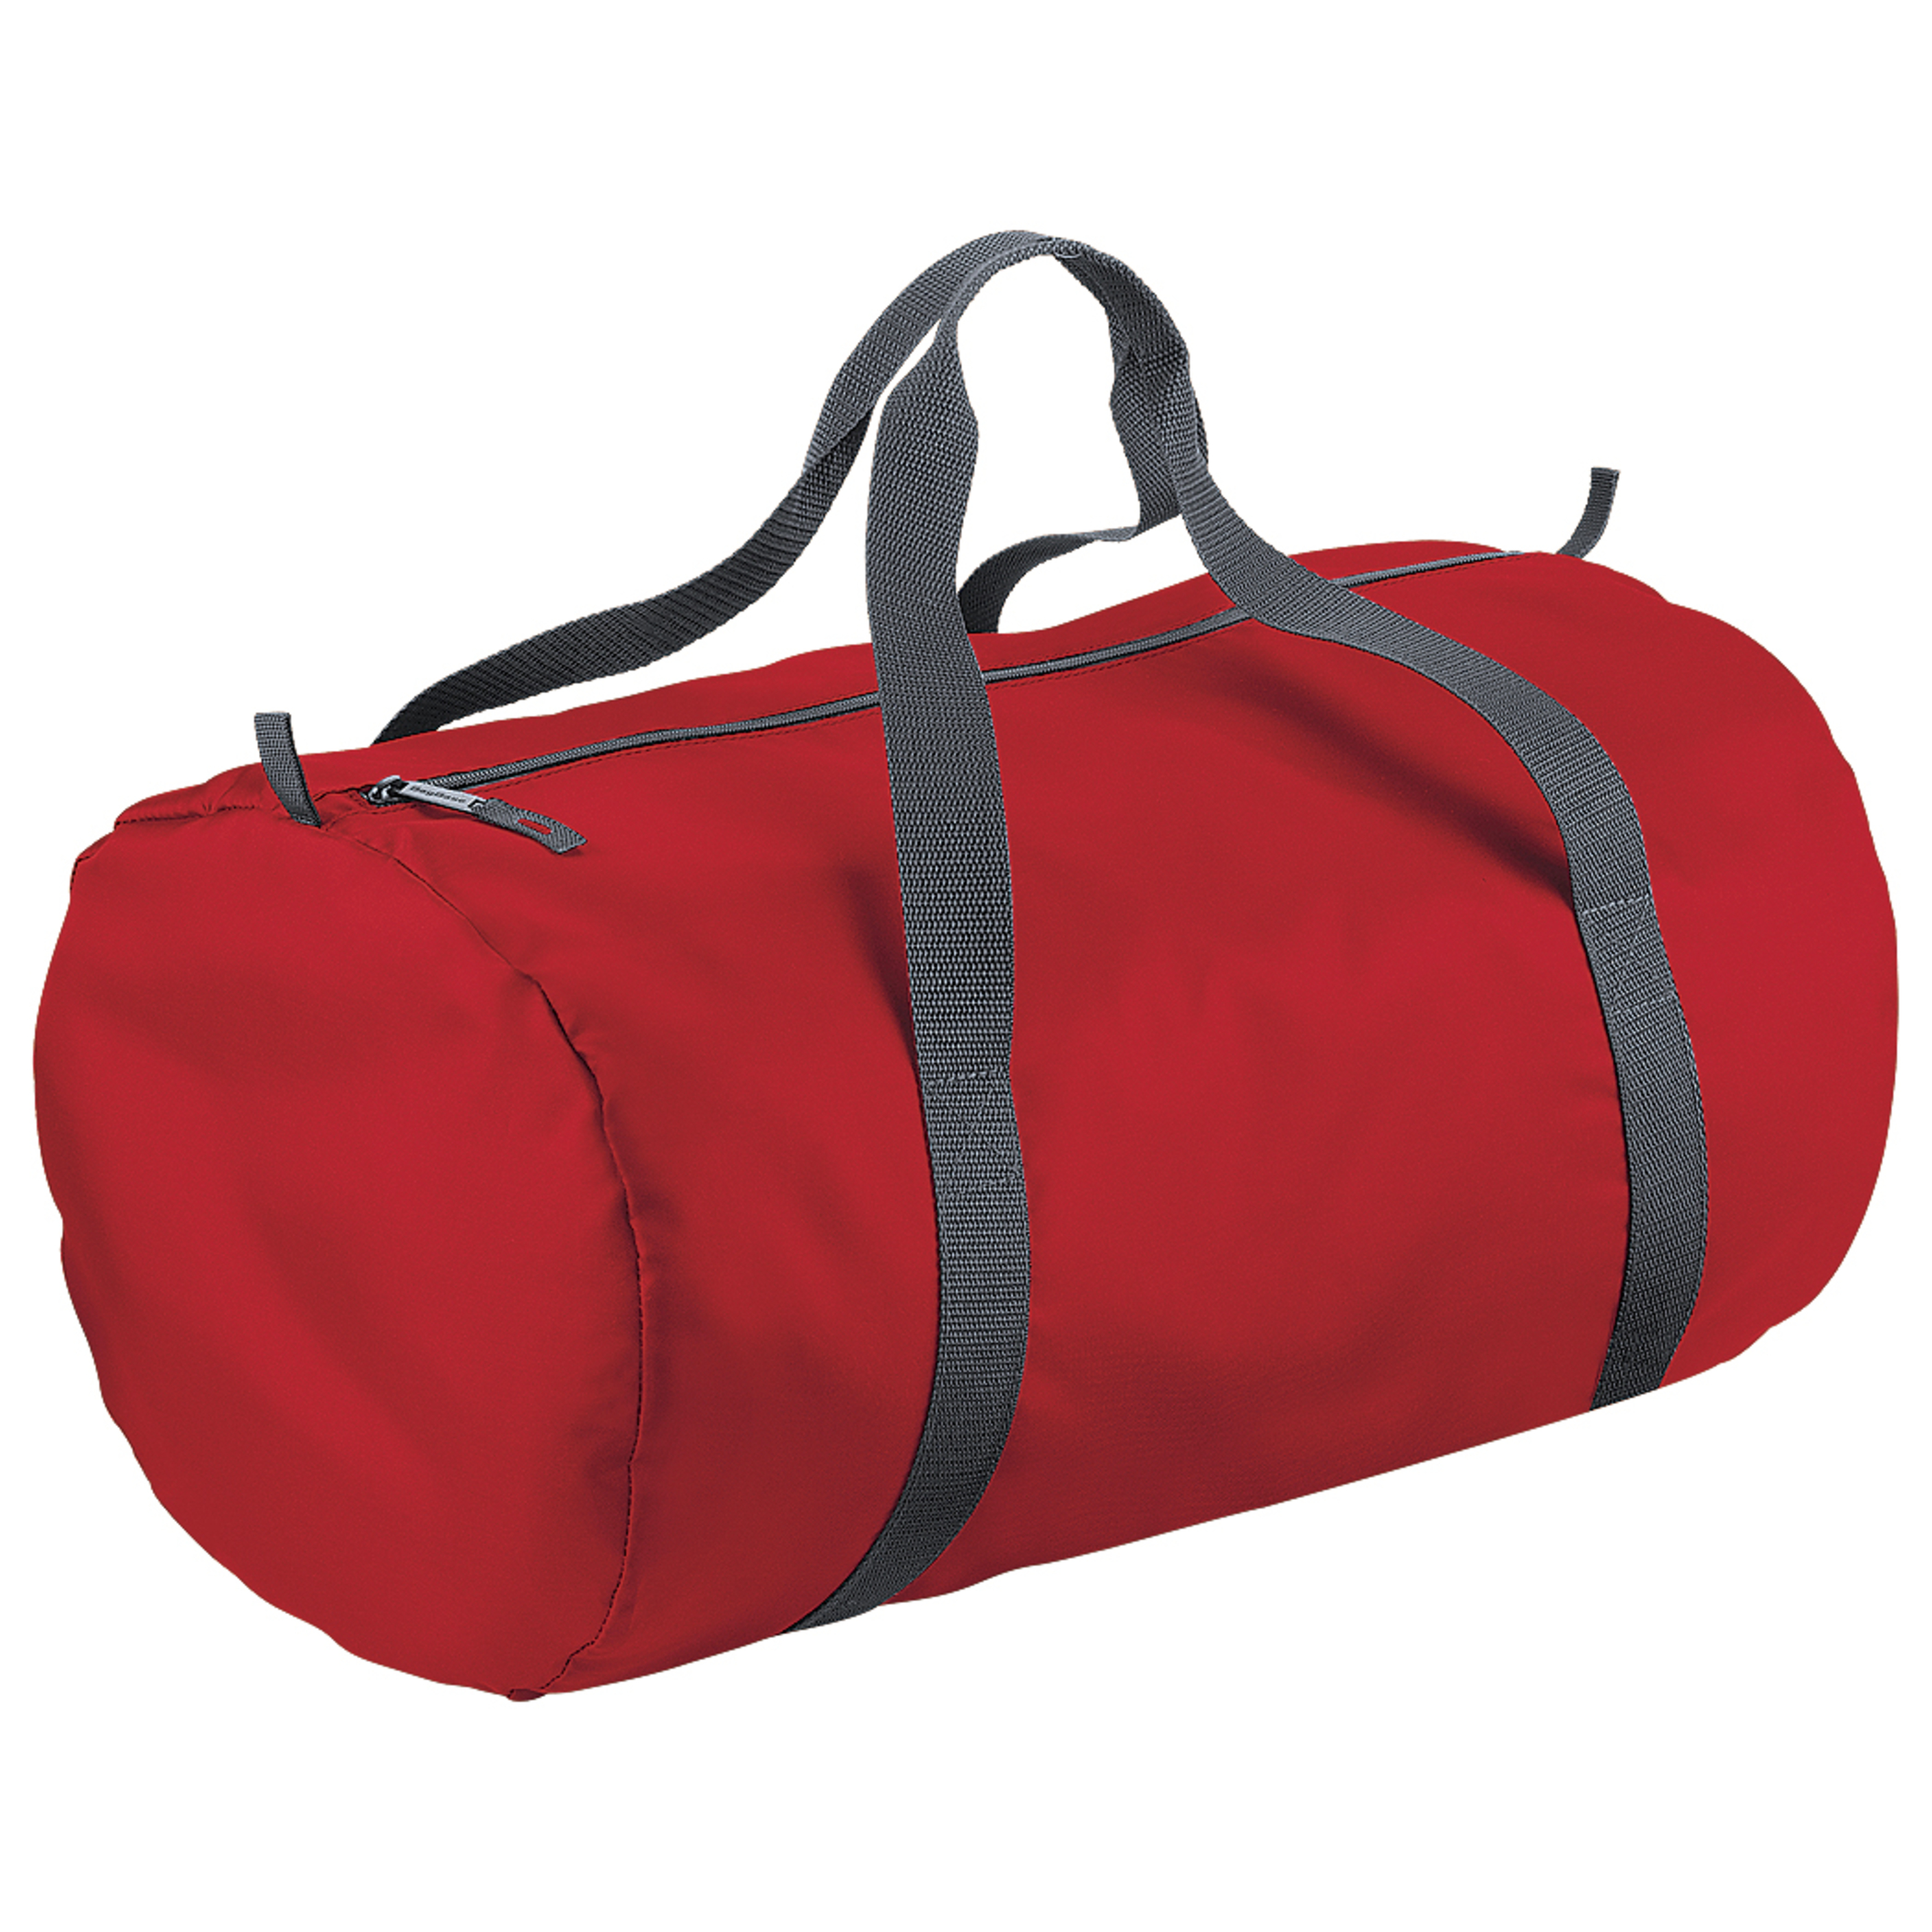 Bolsa De Deporte / De Viaje Impermeable Modelo Barrel Packaway (32 Litros) Bagbase (Rojo)